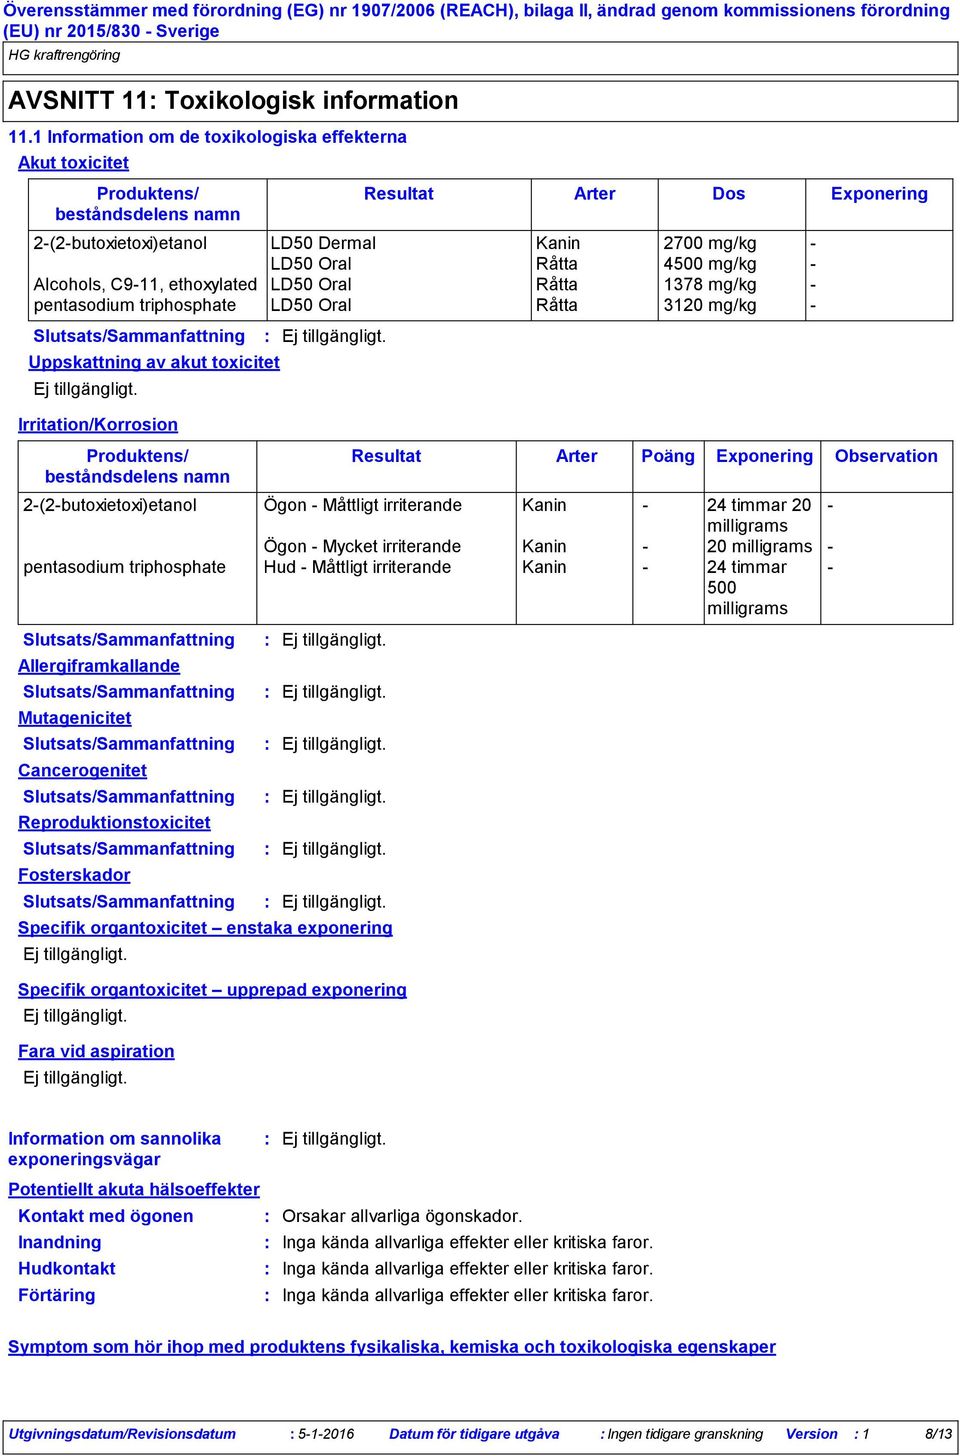 pentasodium triphosphate LD50 Oral Råtta 3120 mg/kg Uppskattning av akut toxicitet Irritation/Korrosion Mutagenicitet Cancerogenitet Reproduktionstoxicitet Fosterskador Resultat Arter Dos Exponering